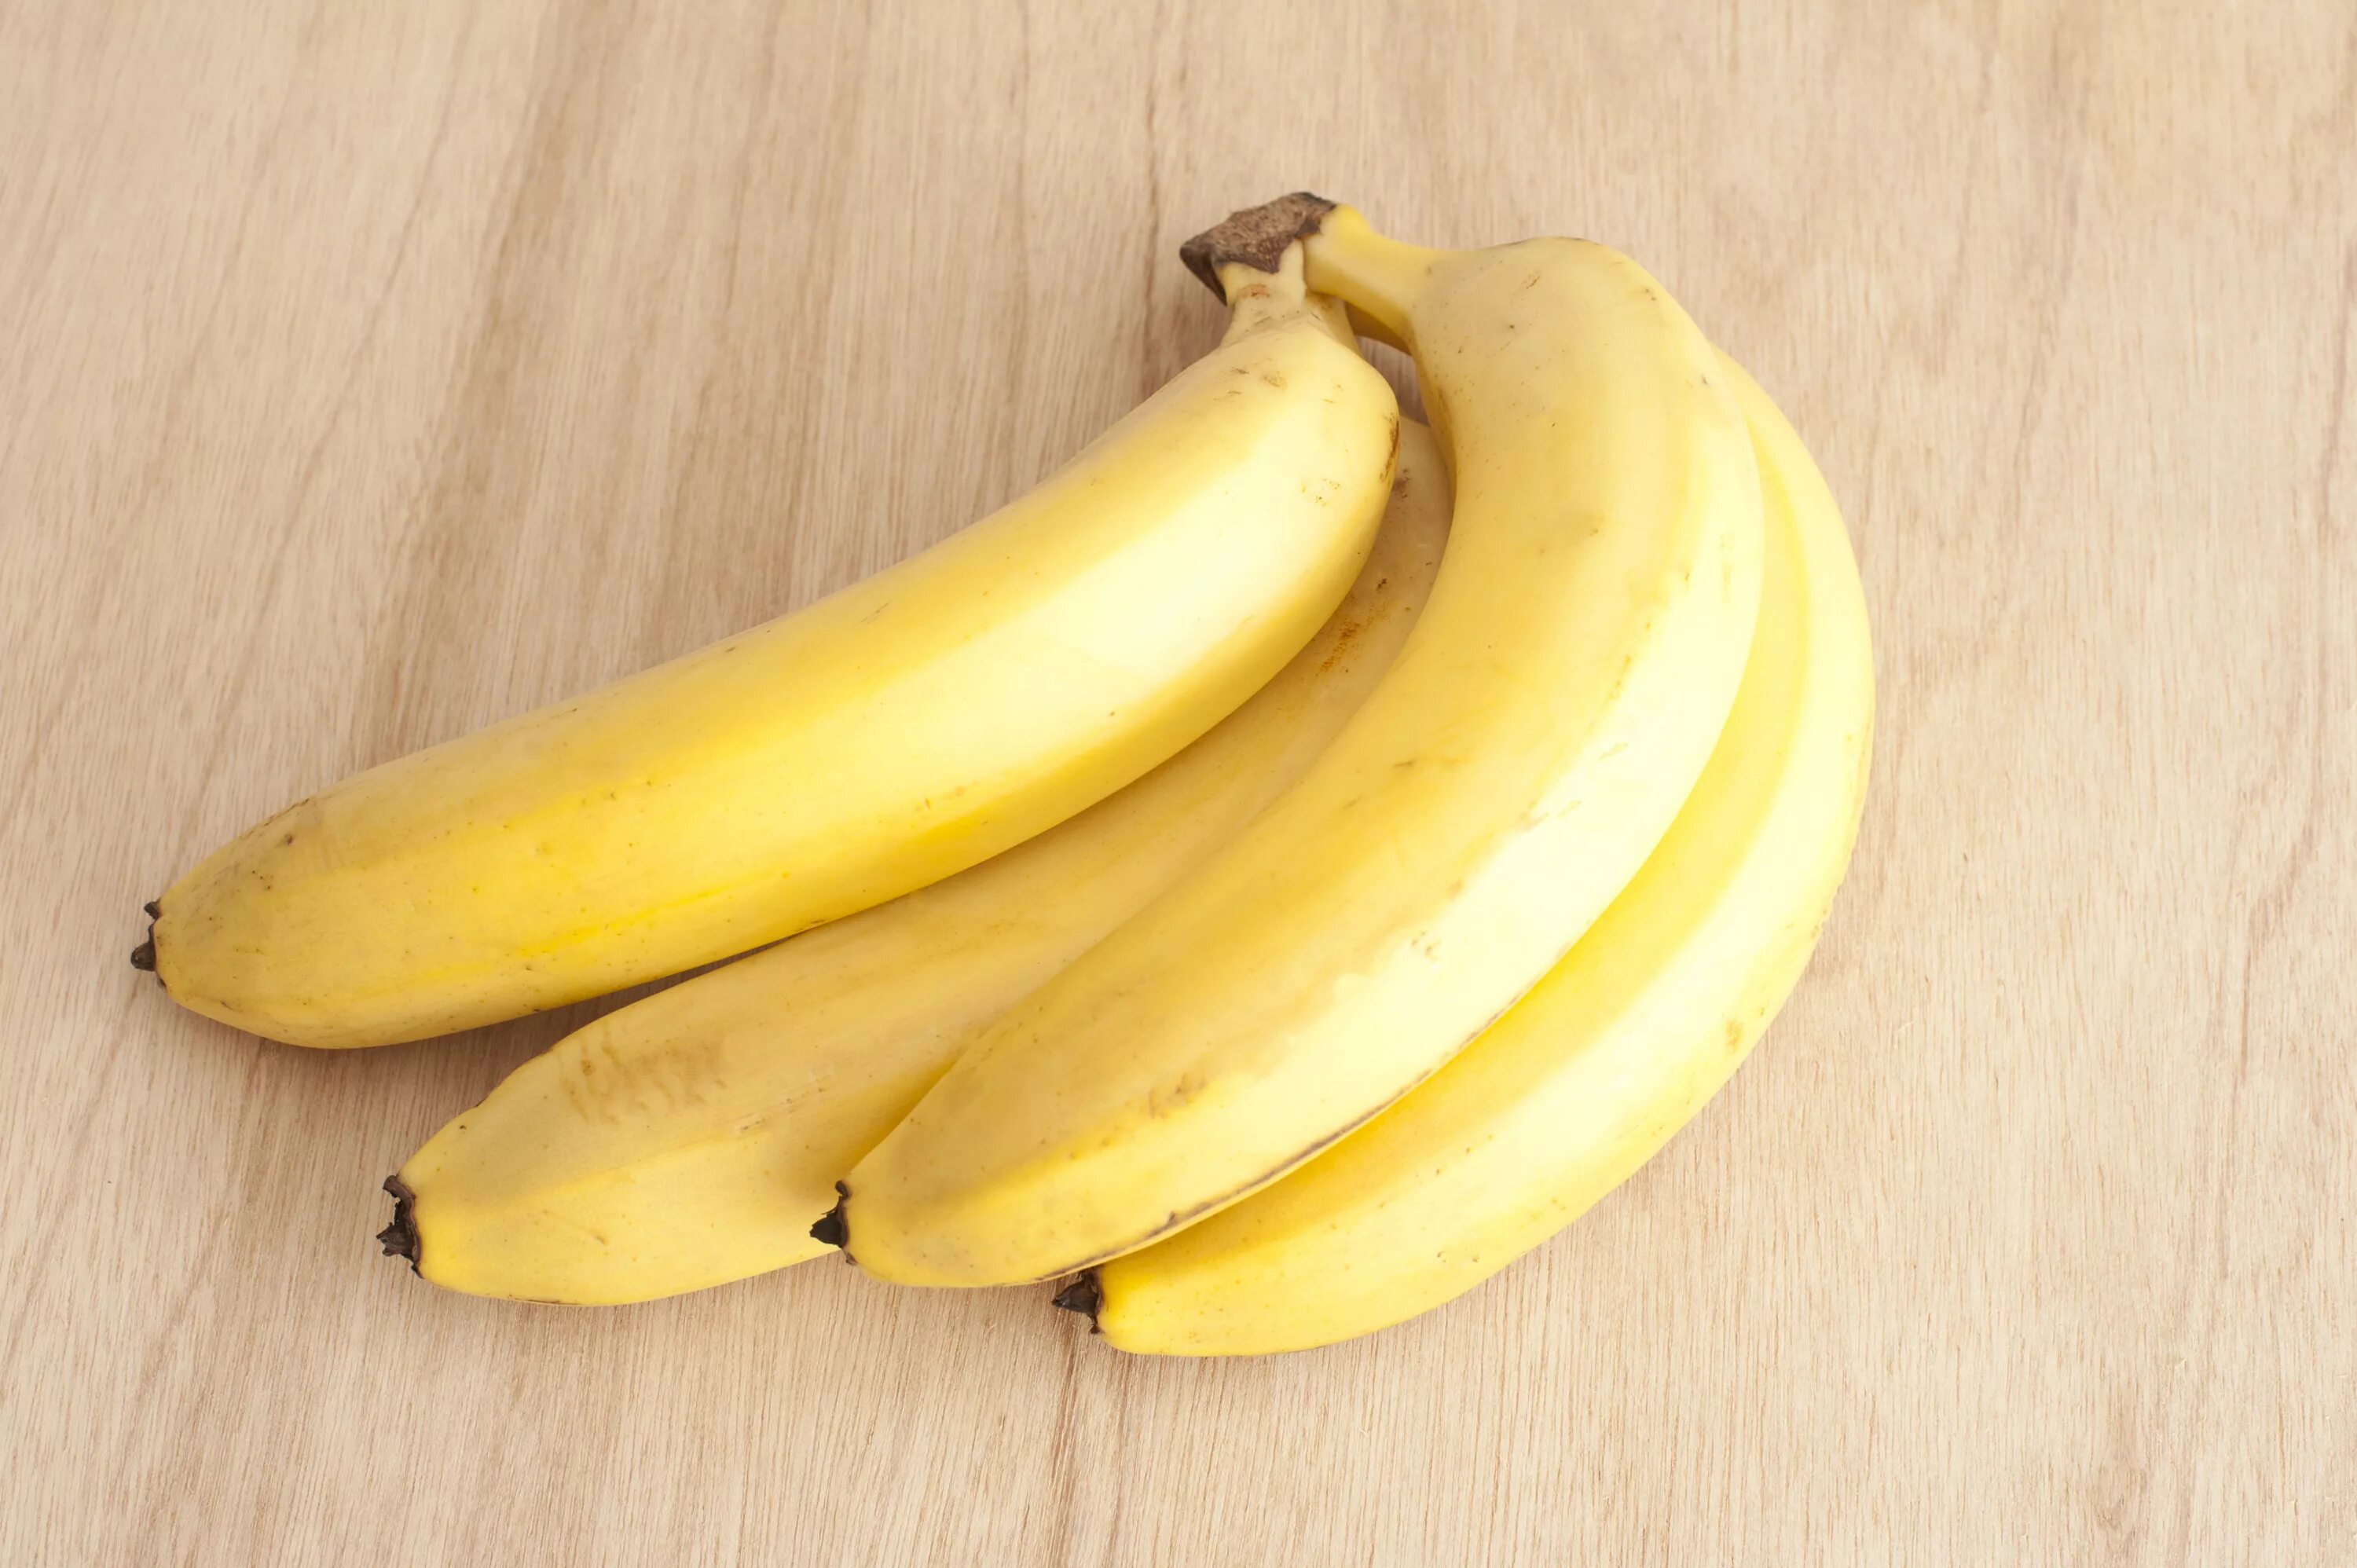 Видео где банан. Банан. 2 Банана. Круглый банан. Банан с пятнышками.